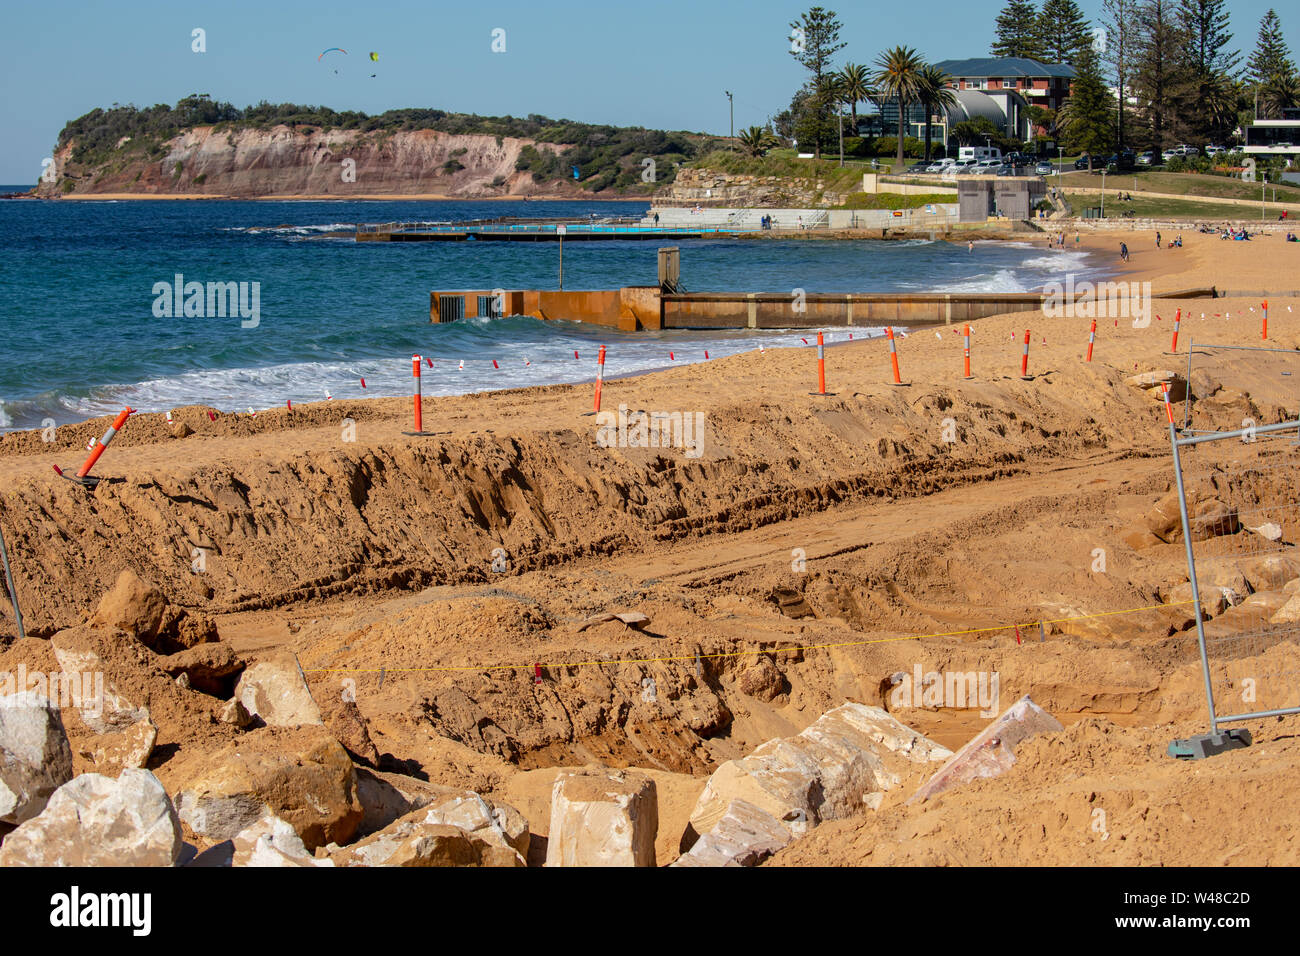 Bau von Verteidigungsanlagen Meer am Strand in collaroy wo König Gezeiten zuvor Häuser und Eigentum beschädigt haben, der Anstieg des Meeresspiegels Sydney Australien Stockfoto